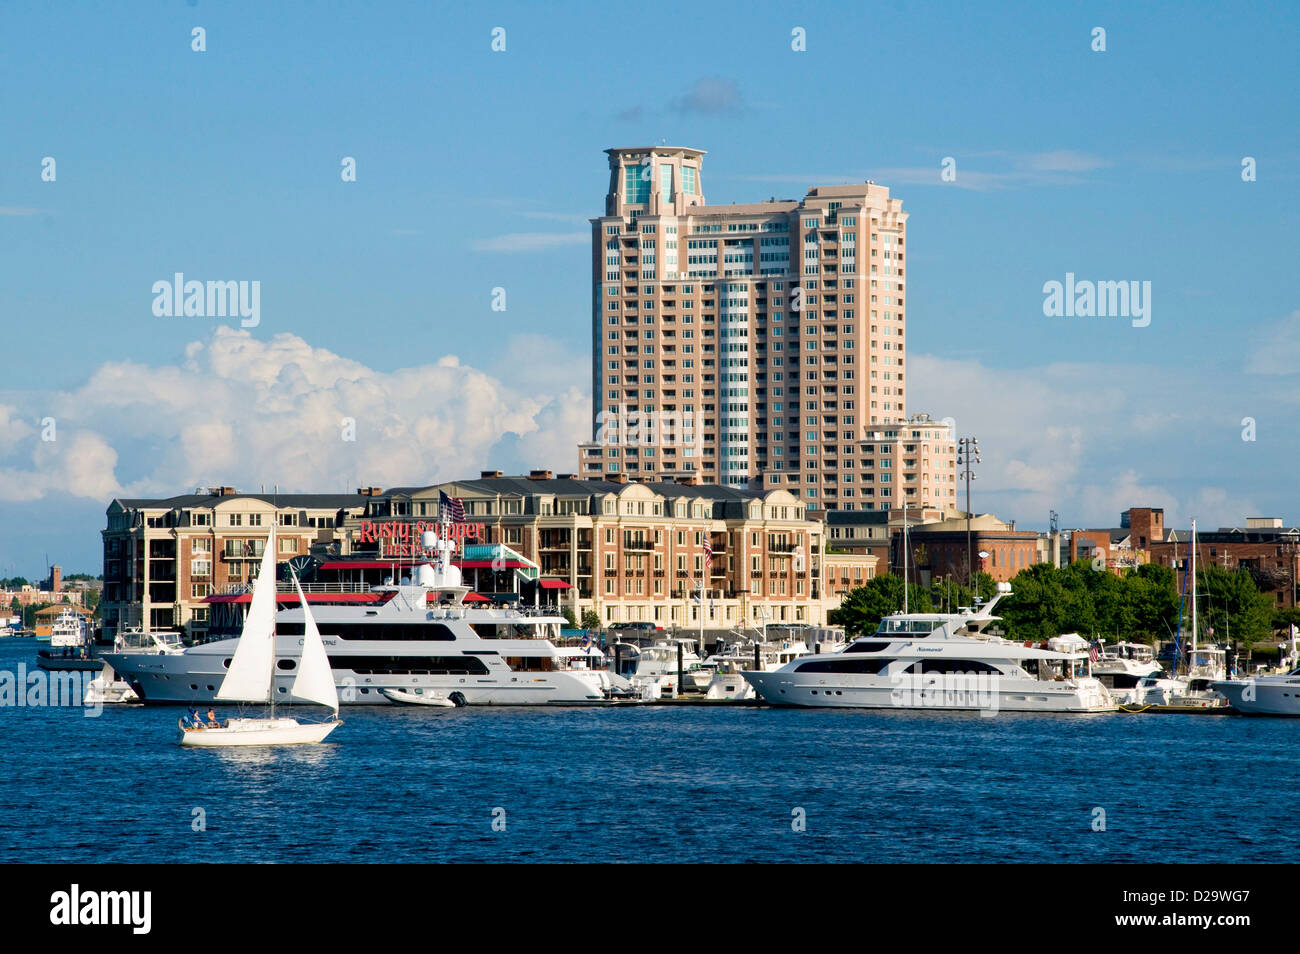 Port de Baltimore, immeubles de grande hauteur, au Maryland. Voiliers Banque D'Images